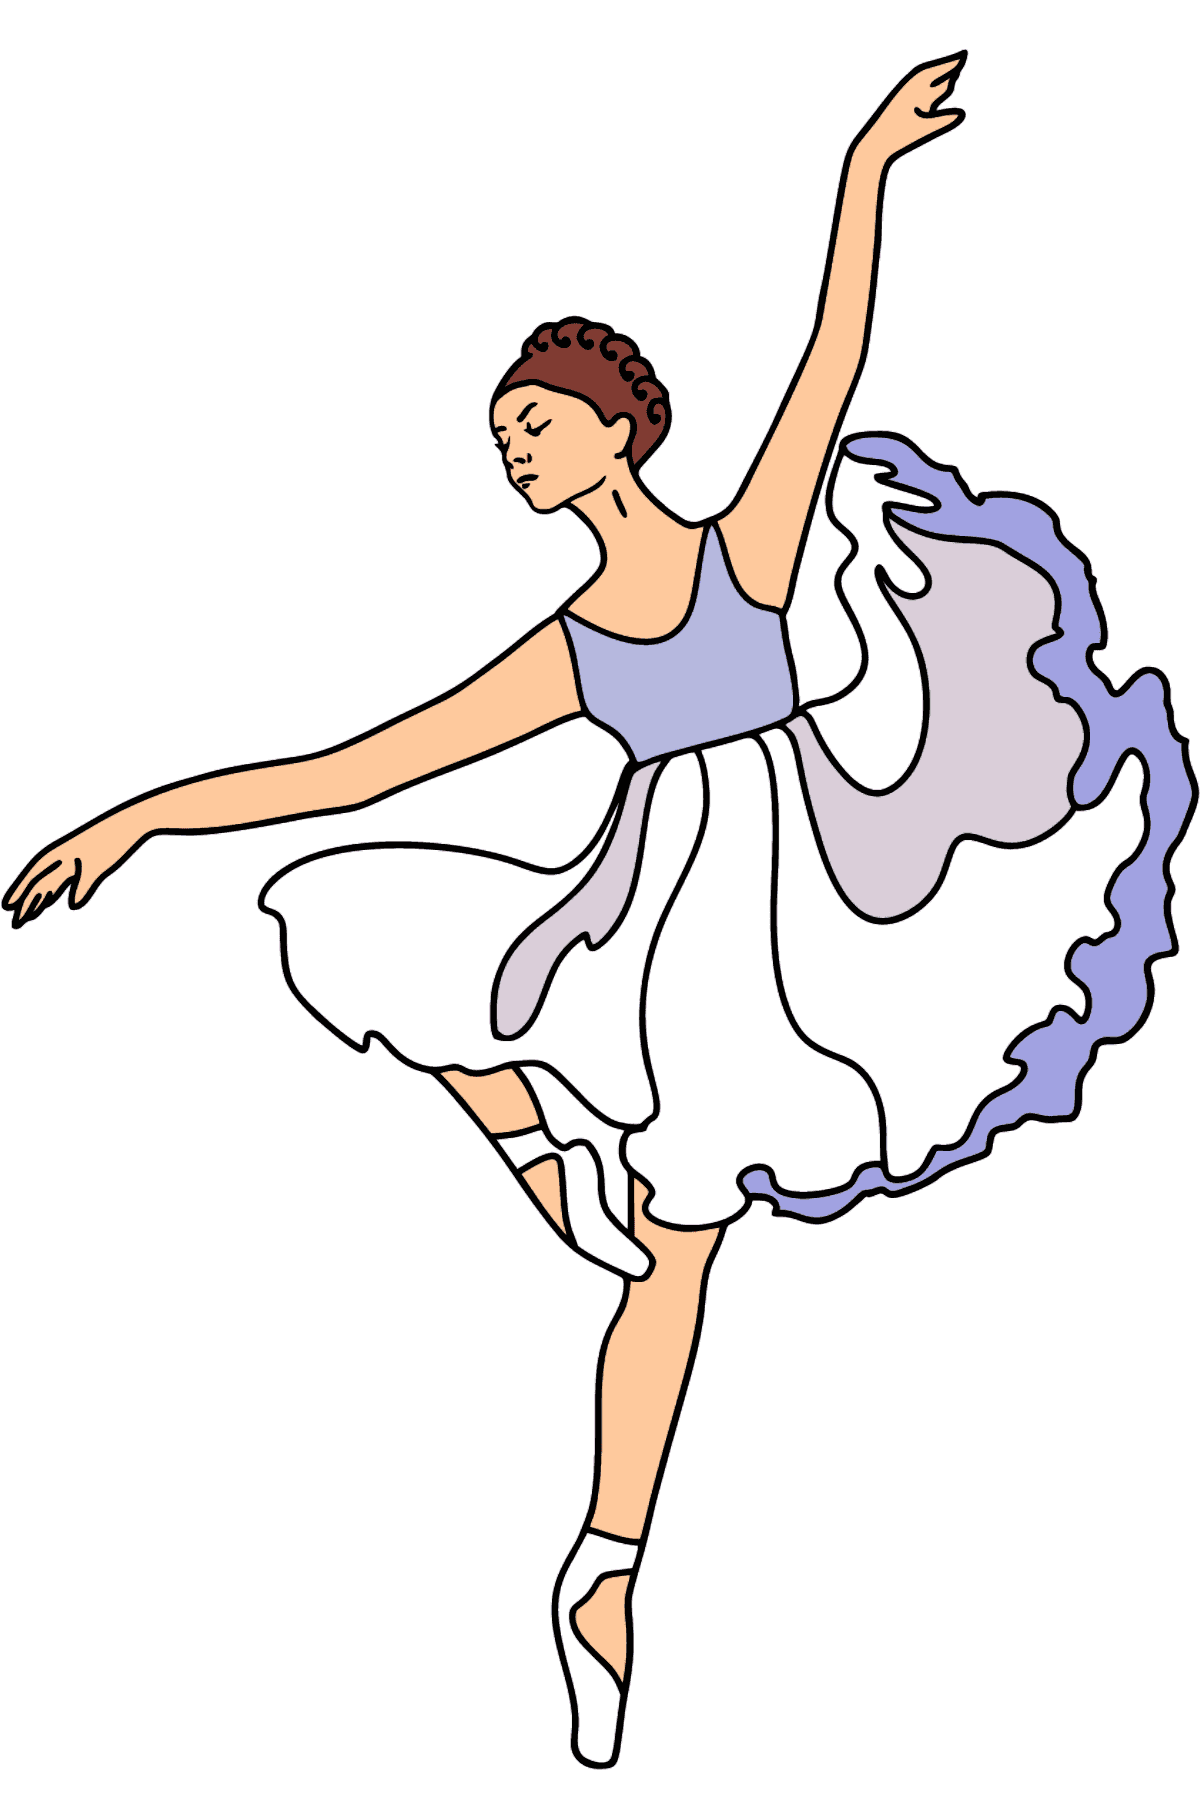 Dibujo para colorear - Bailarina con vestido lila - Dibujos para Colorear para Niños